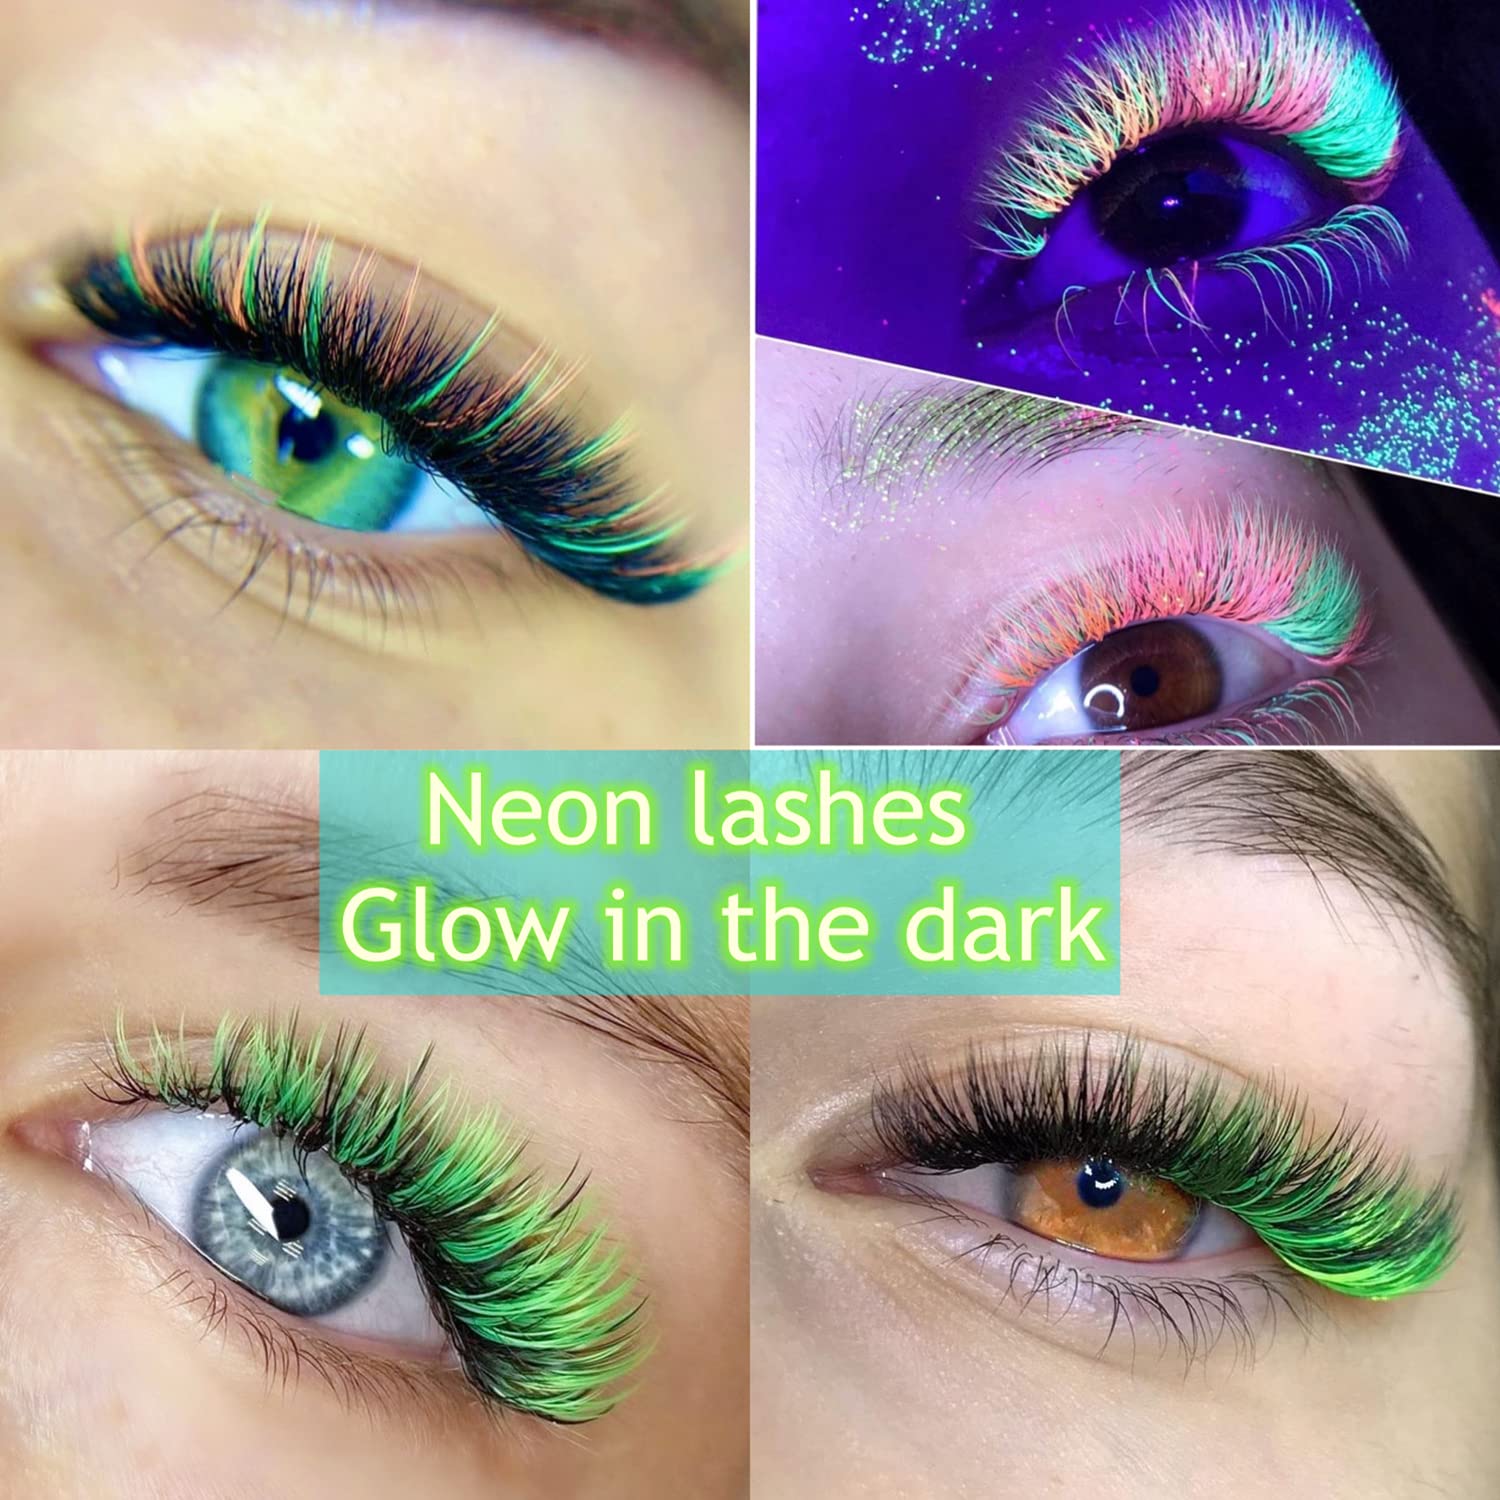 Neon Eyelash Extensions - Fadlash